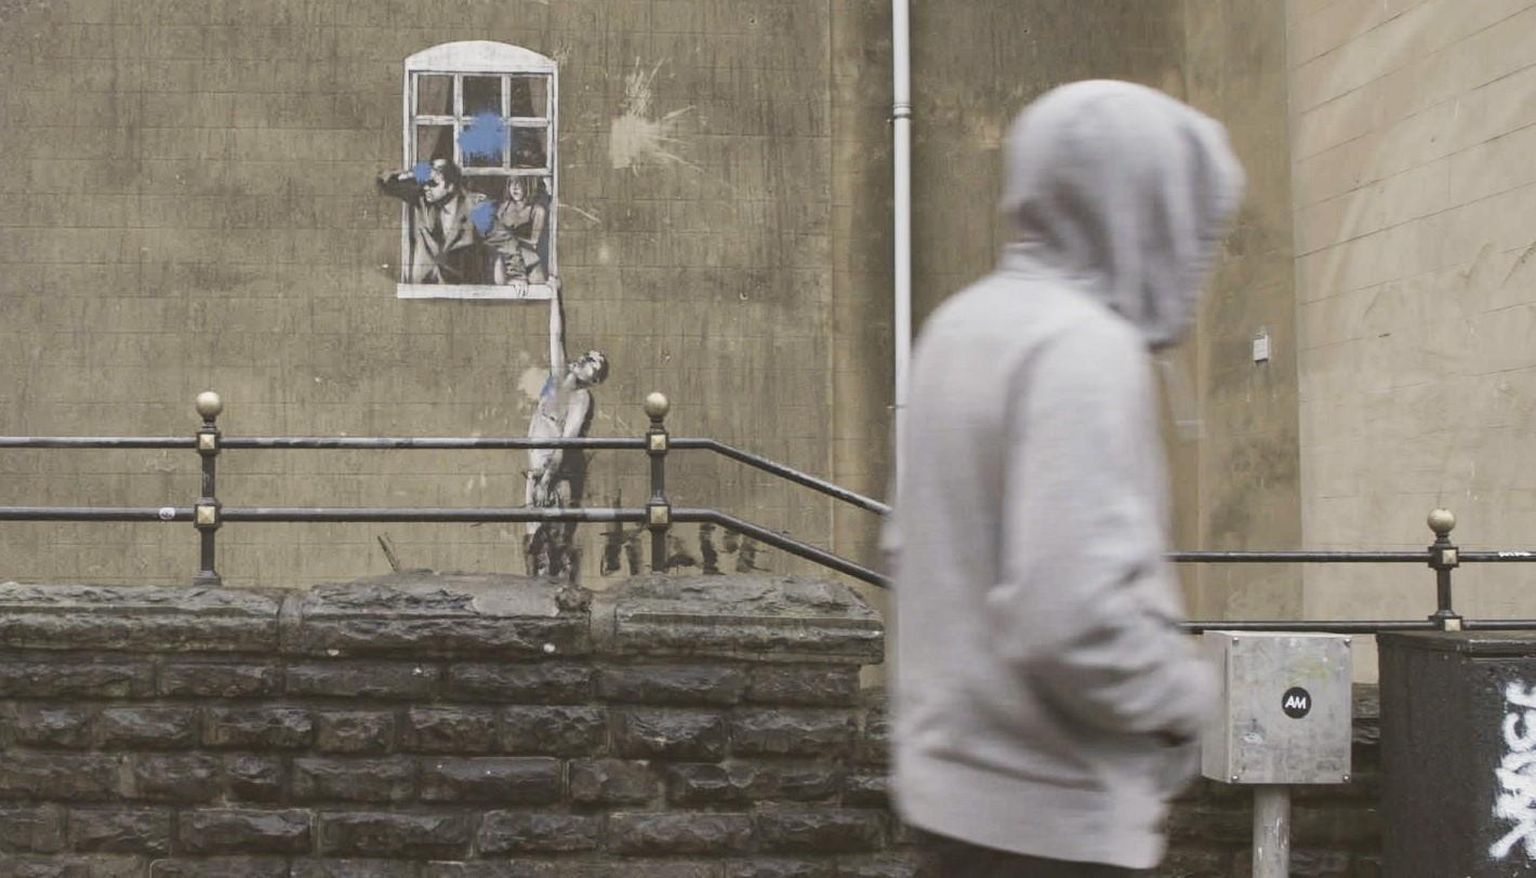 Filmis uuritakse, kes on Banksy ja miks ta ei taha paljastada oma identiteeti.